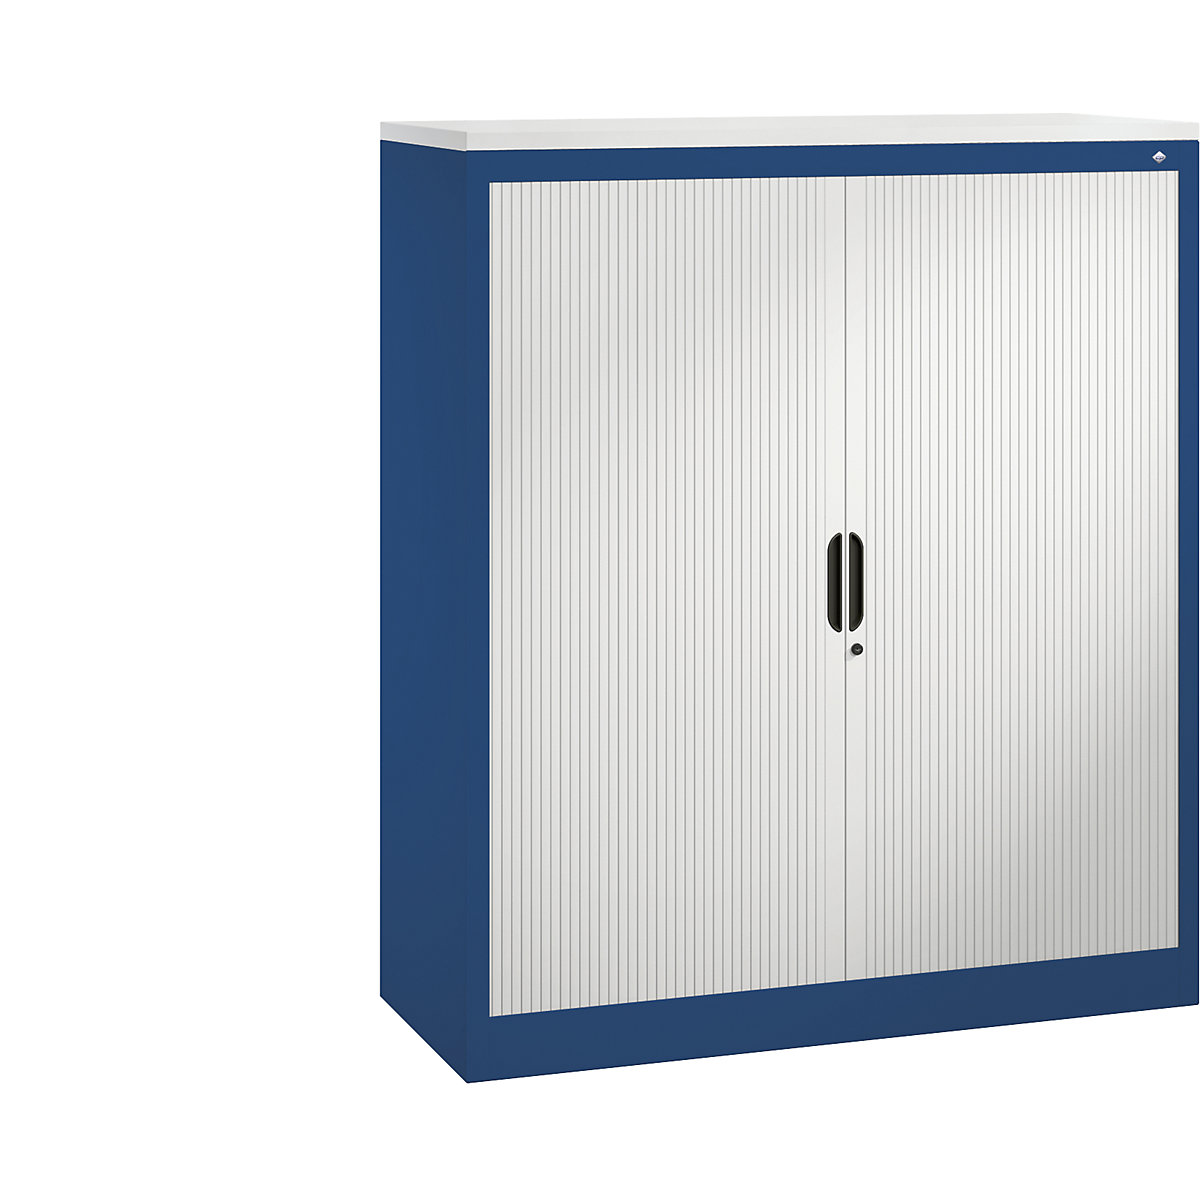 Roller shutter cupboard with horizontal shutter – C+P, HxWxD 1345 x 1200 x 420 mm, 3 shelves, 3.5 file heights, gentian blue / light grey-4